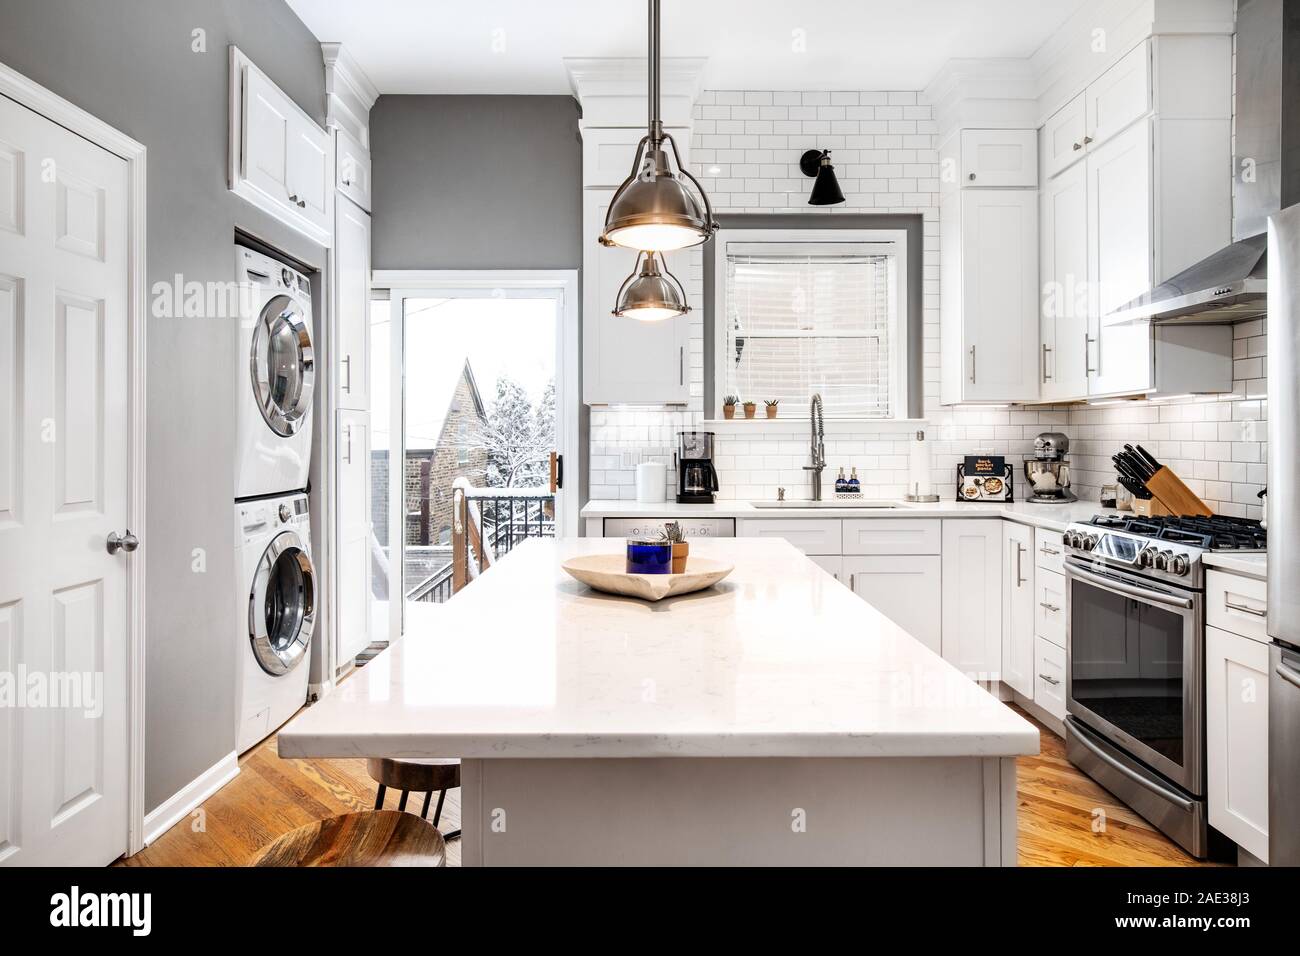 Eine luxuriöse Küche mit Edelstahlgeräten und hellem Holz ausgestattet. Die Ansicht zeigt eine Szene. Stockfoto